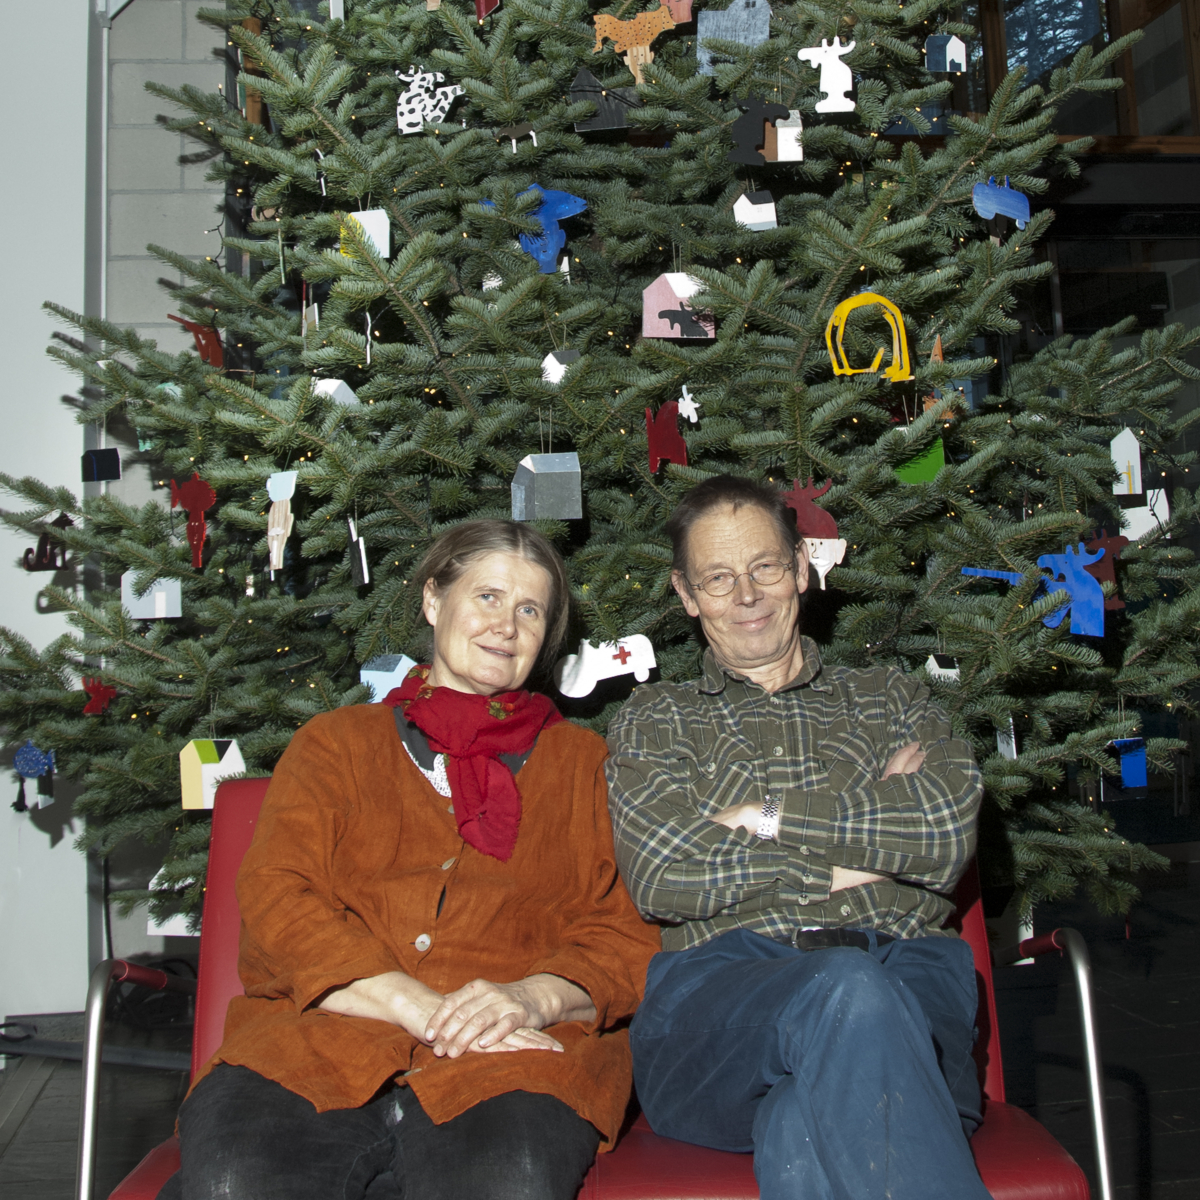 Maihaugen's Christmas tree 2013, decorated by Hanne Borchgrevink and Tore Hansen. Photo: Audbjørn Rønning/Maihaugen